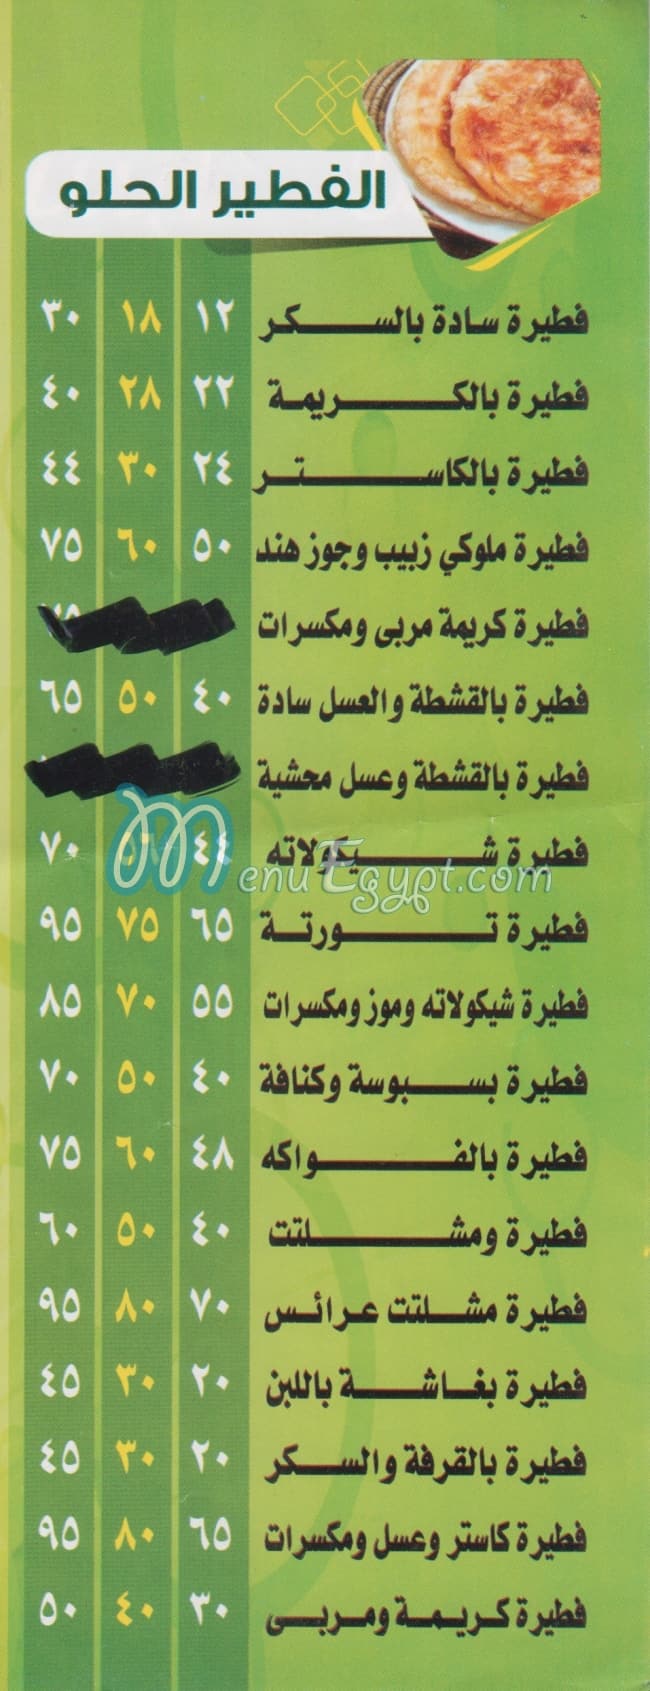 Arafa menu prices